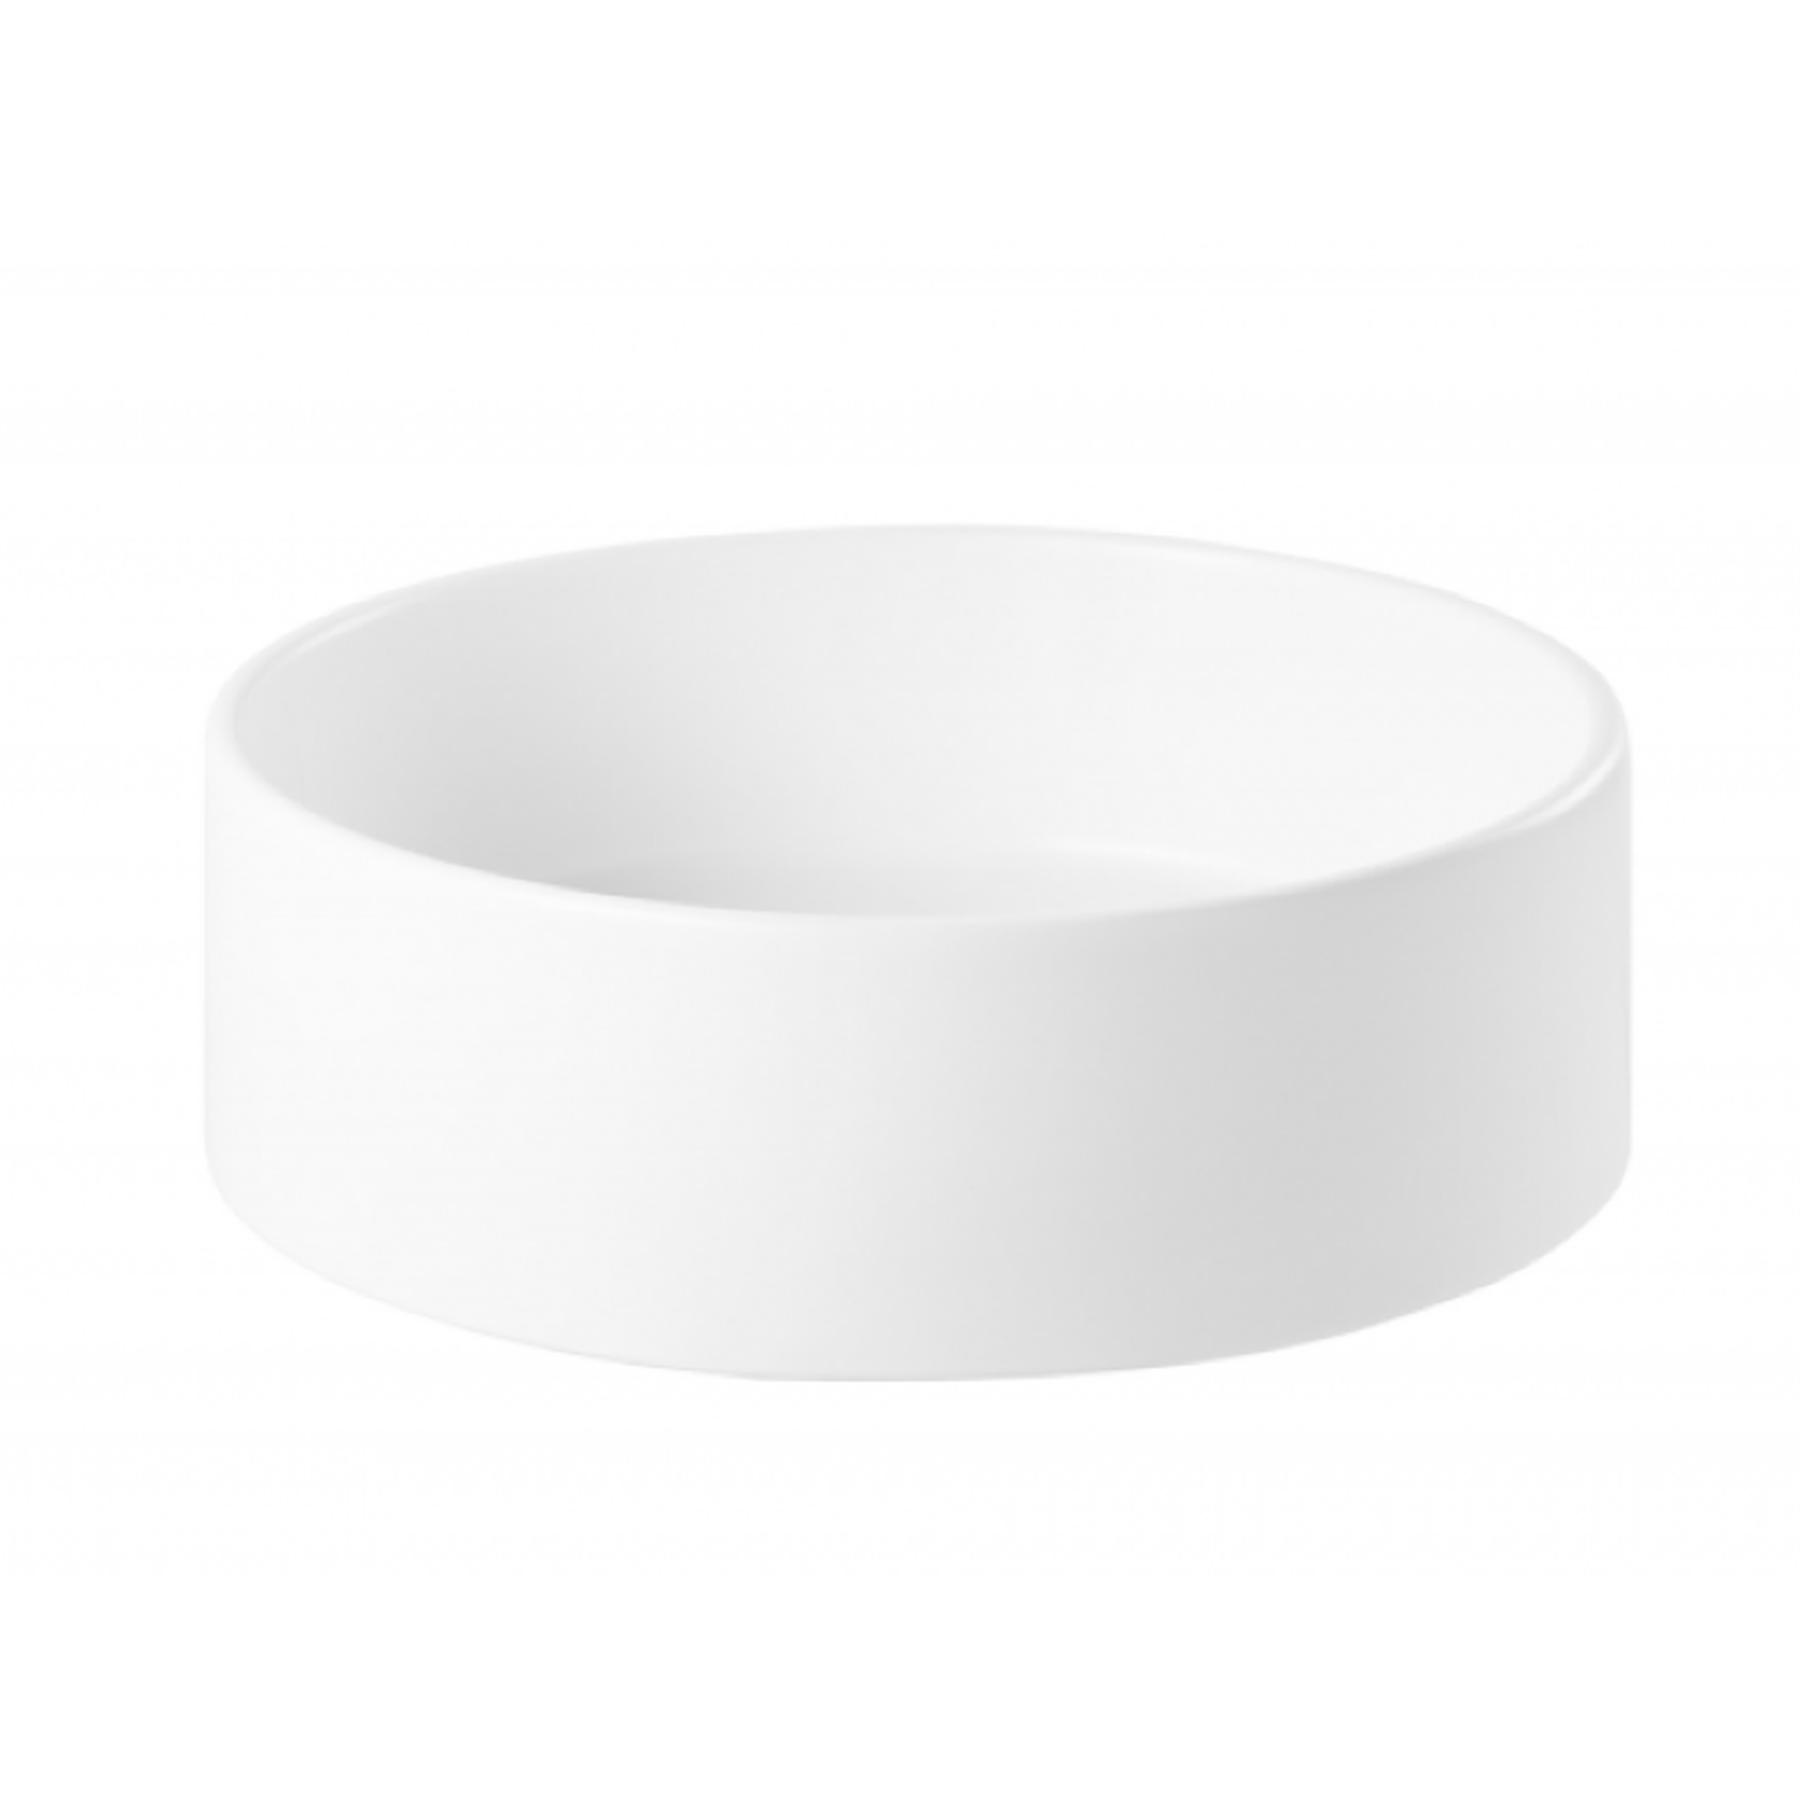 Vasque céramique traditionnelle Gamme PRO SANINDUSA ronde a poser sur plan rond 45 couleur blanc/couleur blanc mate    